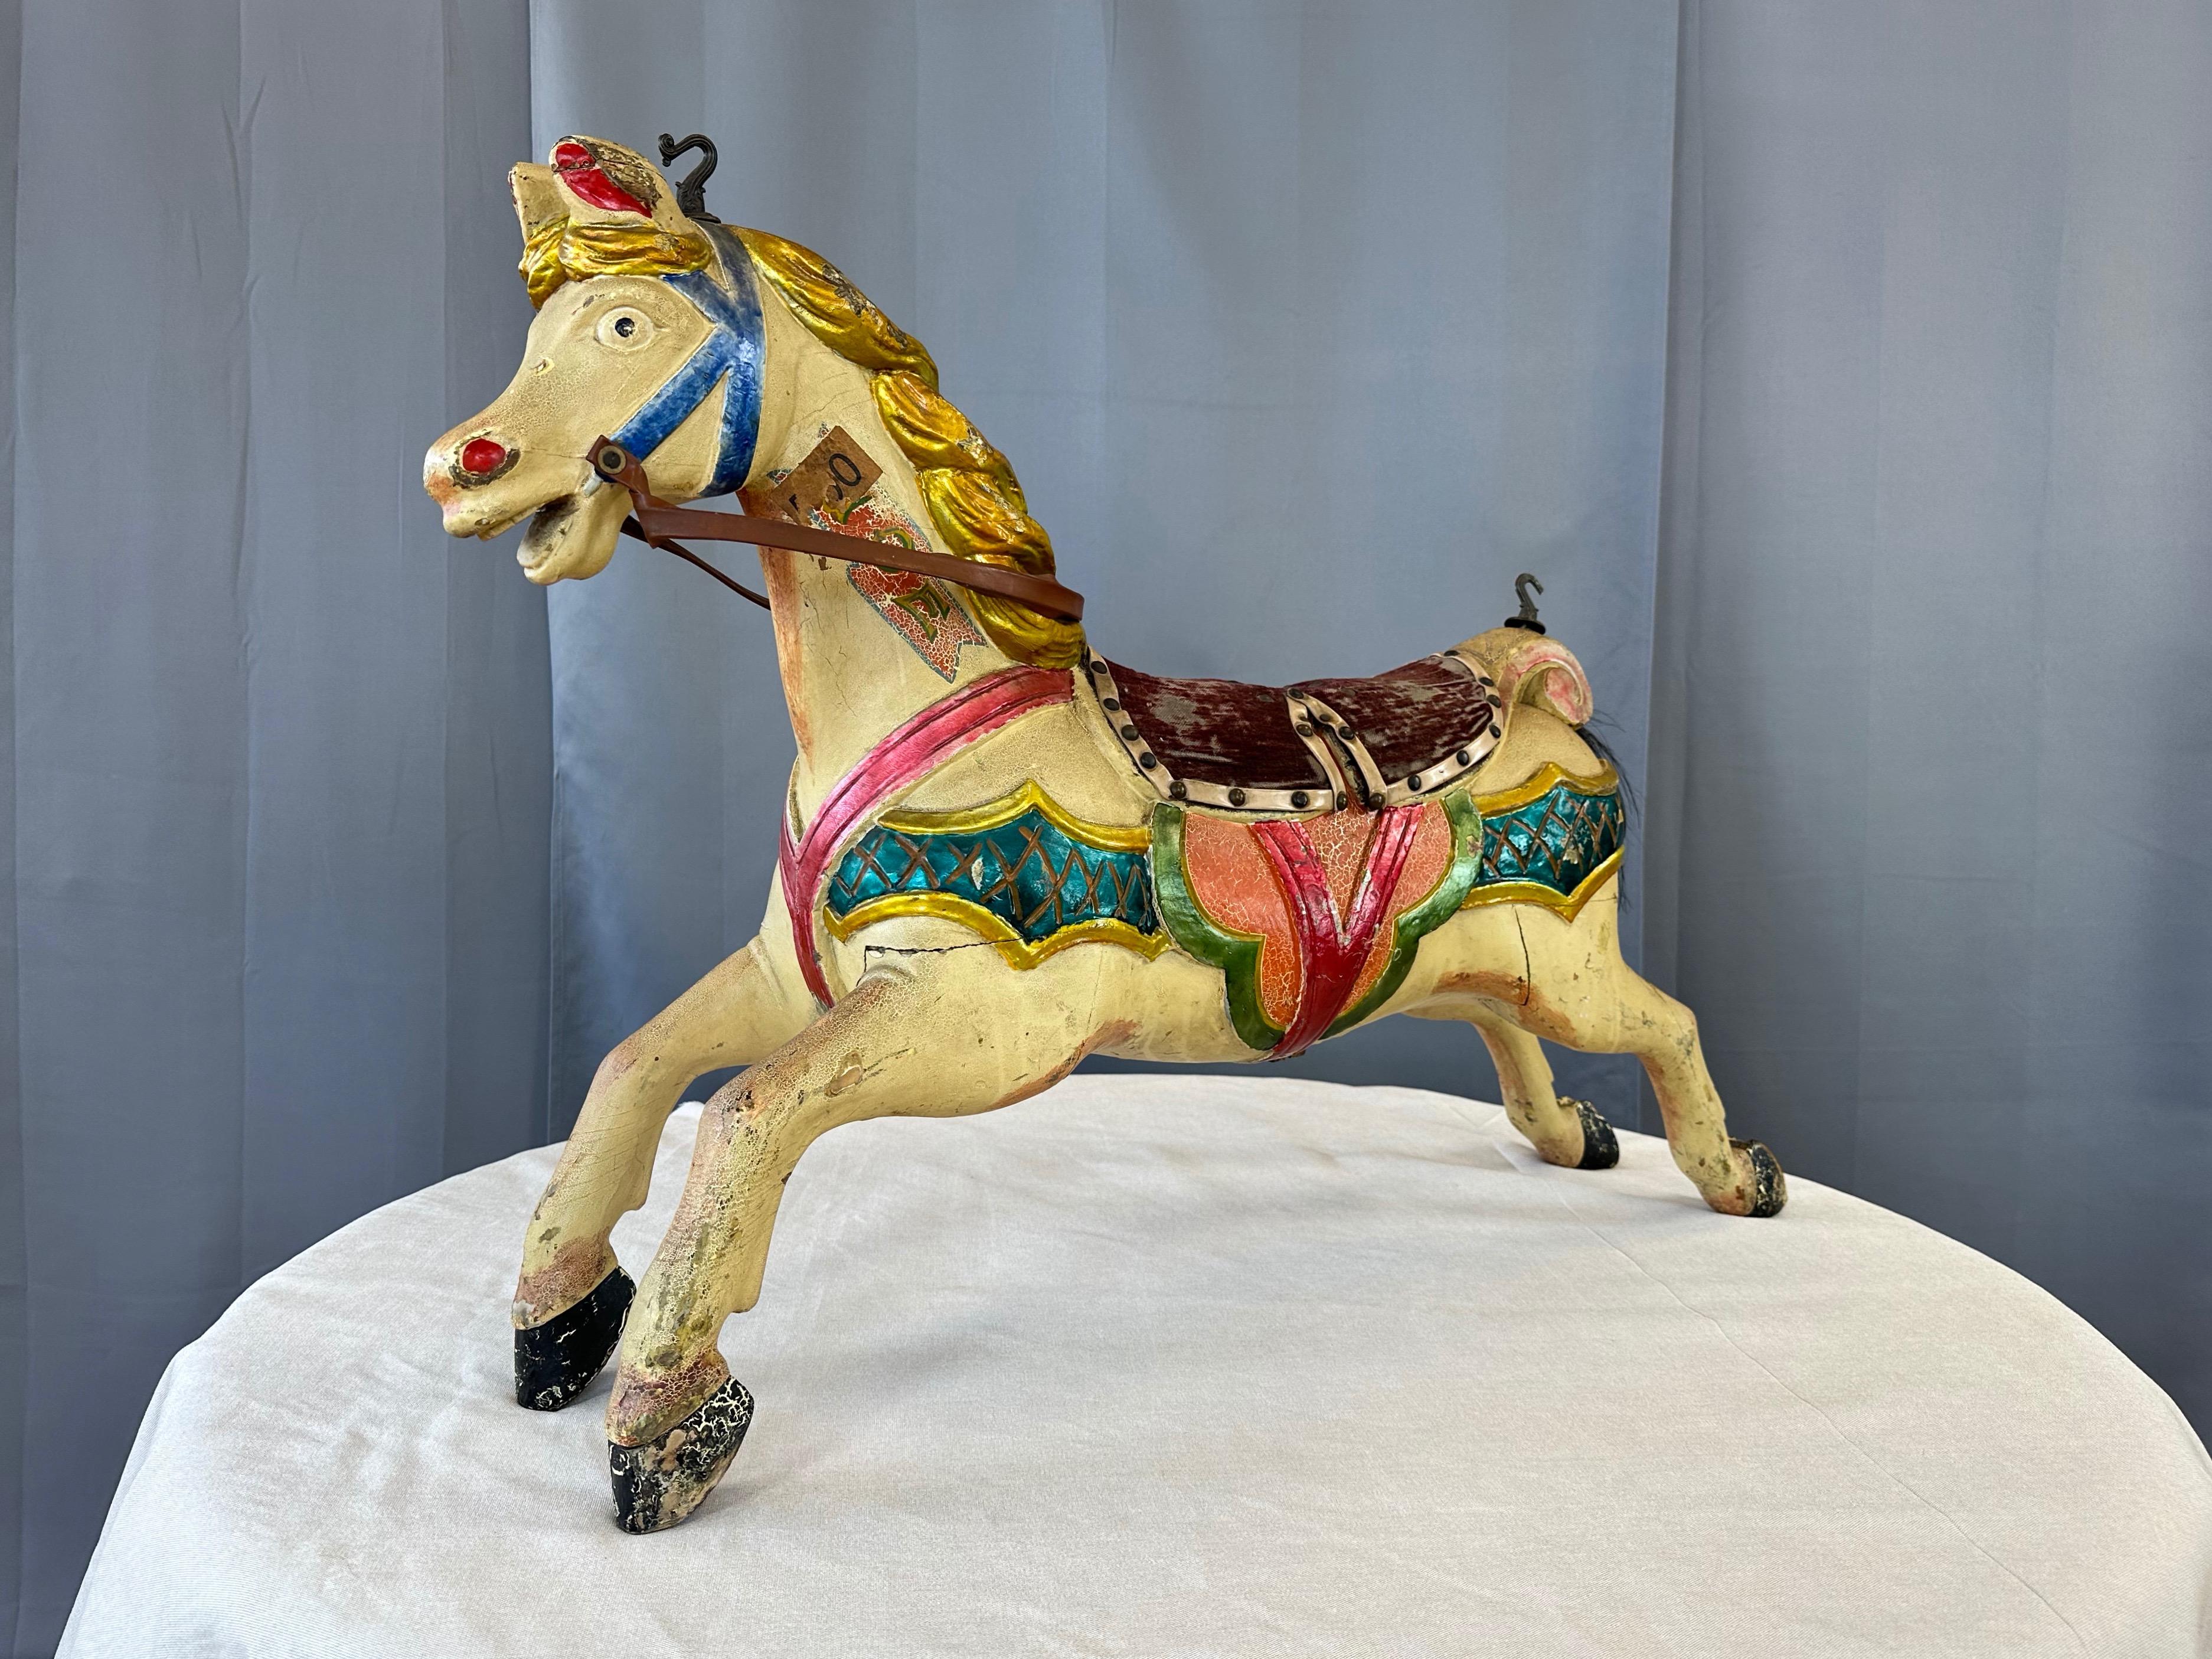 Très charmant cheval de carrousel en bois pour enfant, datant de 1920, avec finition polychrome, selle en mohair et queue en crin de cheval.

Ce cheval de carrousel en bois sculpté à la main, de taille enfant, a une expression délicieusement excitée